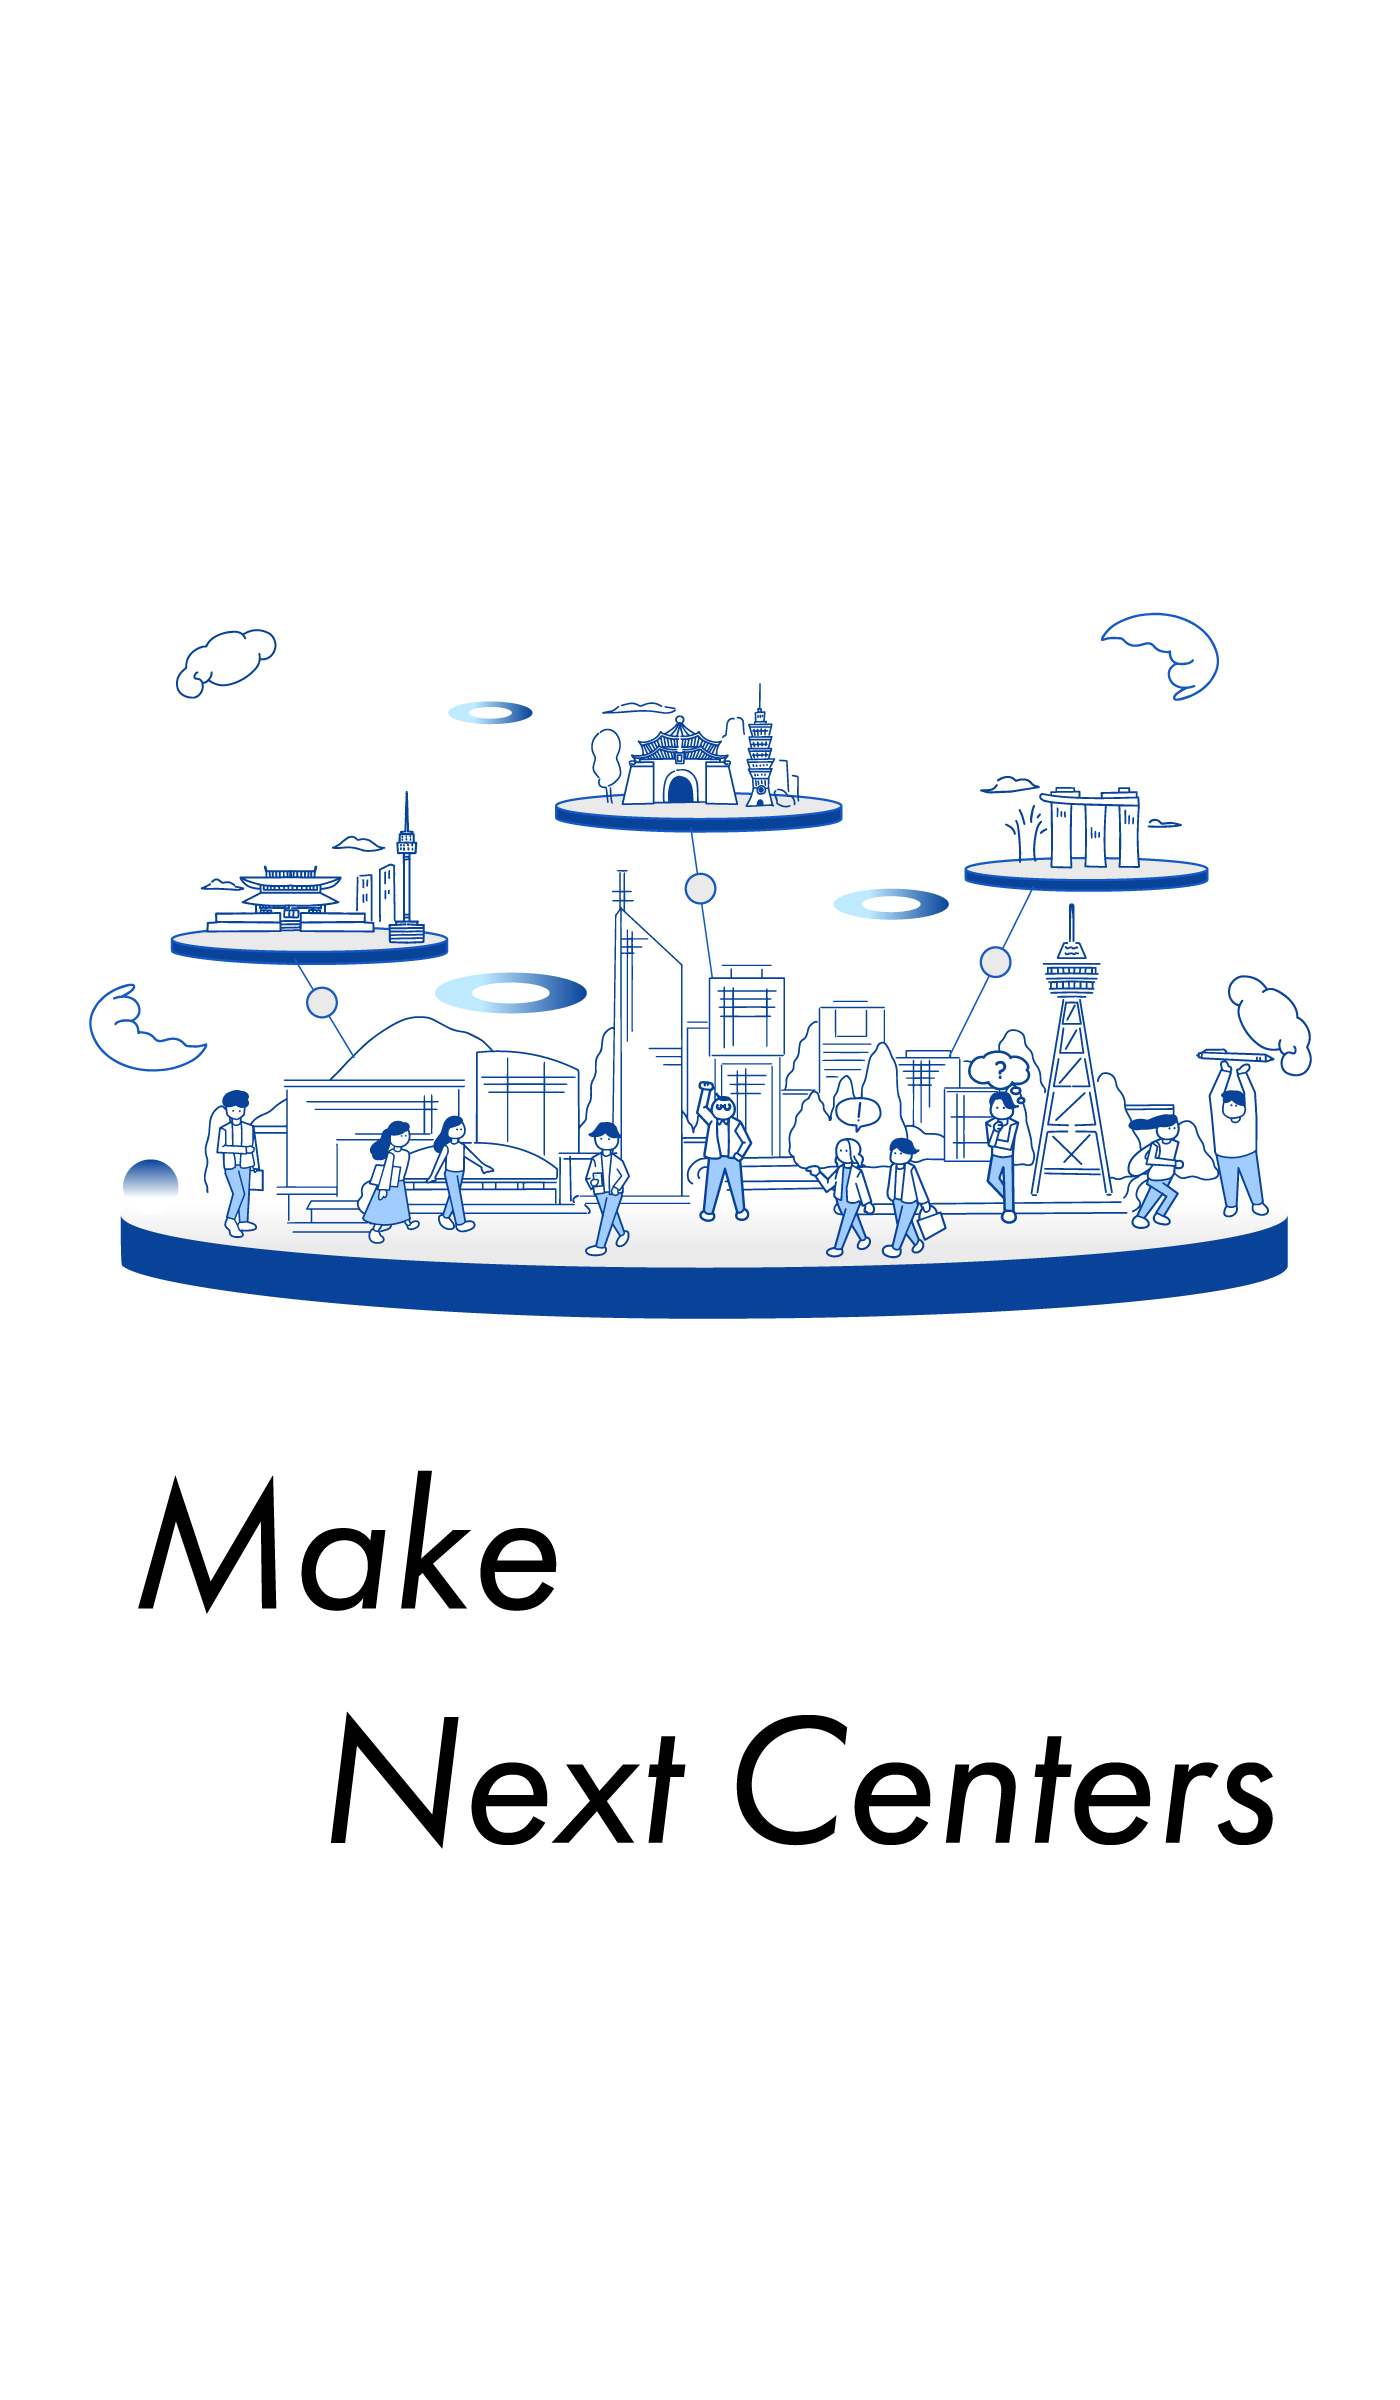 Make Next Centers　次の中心をつくる パートナーの力を活かしてスタートアップ企業の成長を倍増させる、福岡のアーリー・シード向けベンチャーキャピタル | GxPartners ジーエックスパートナーズ